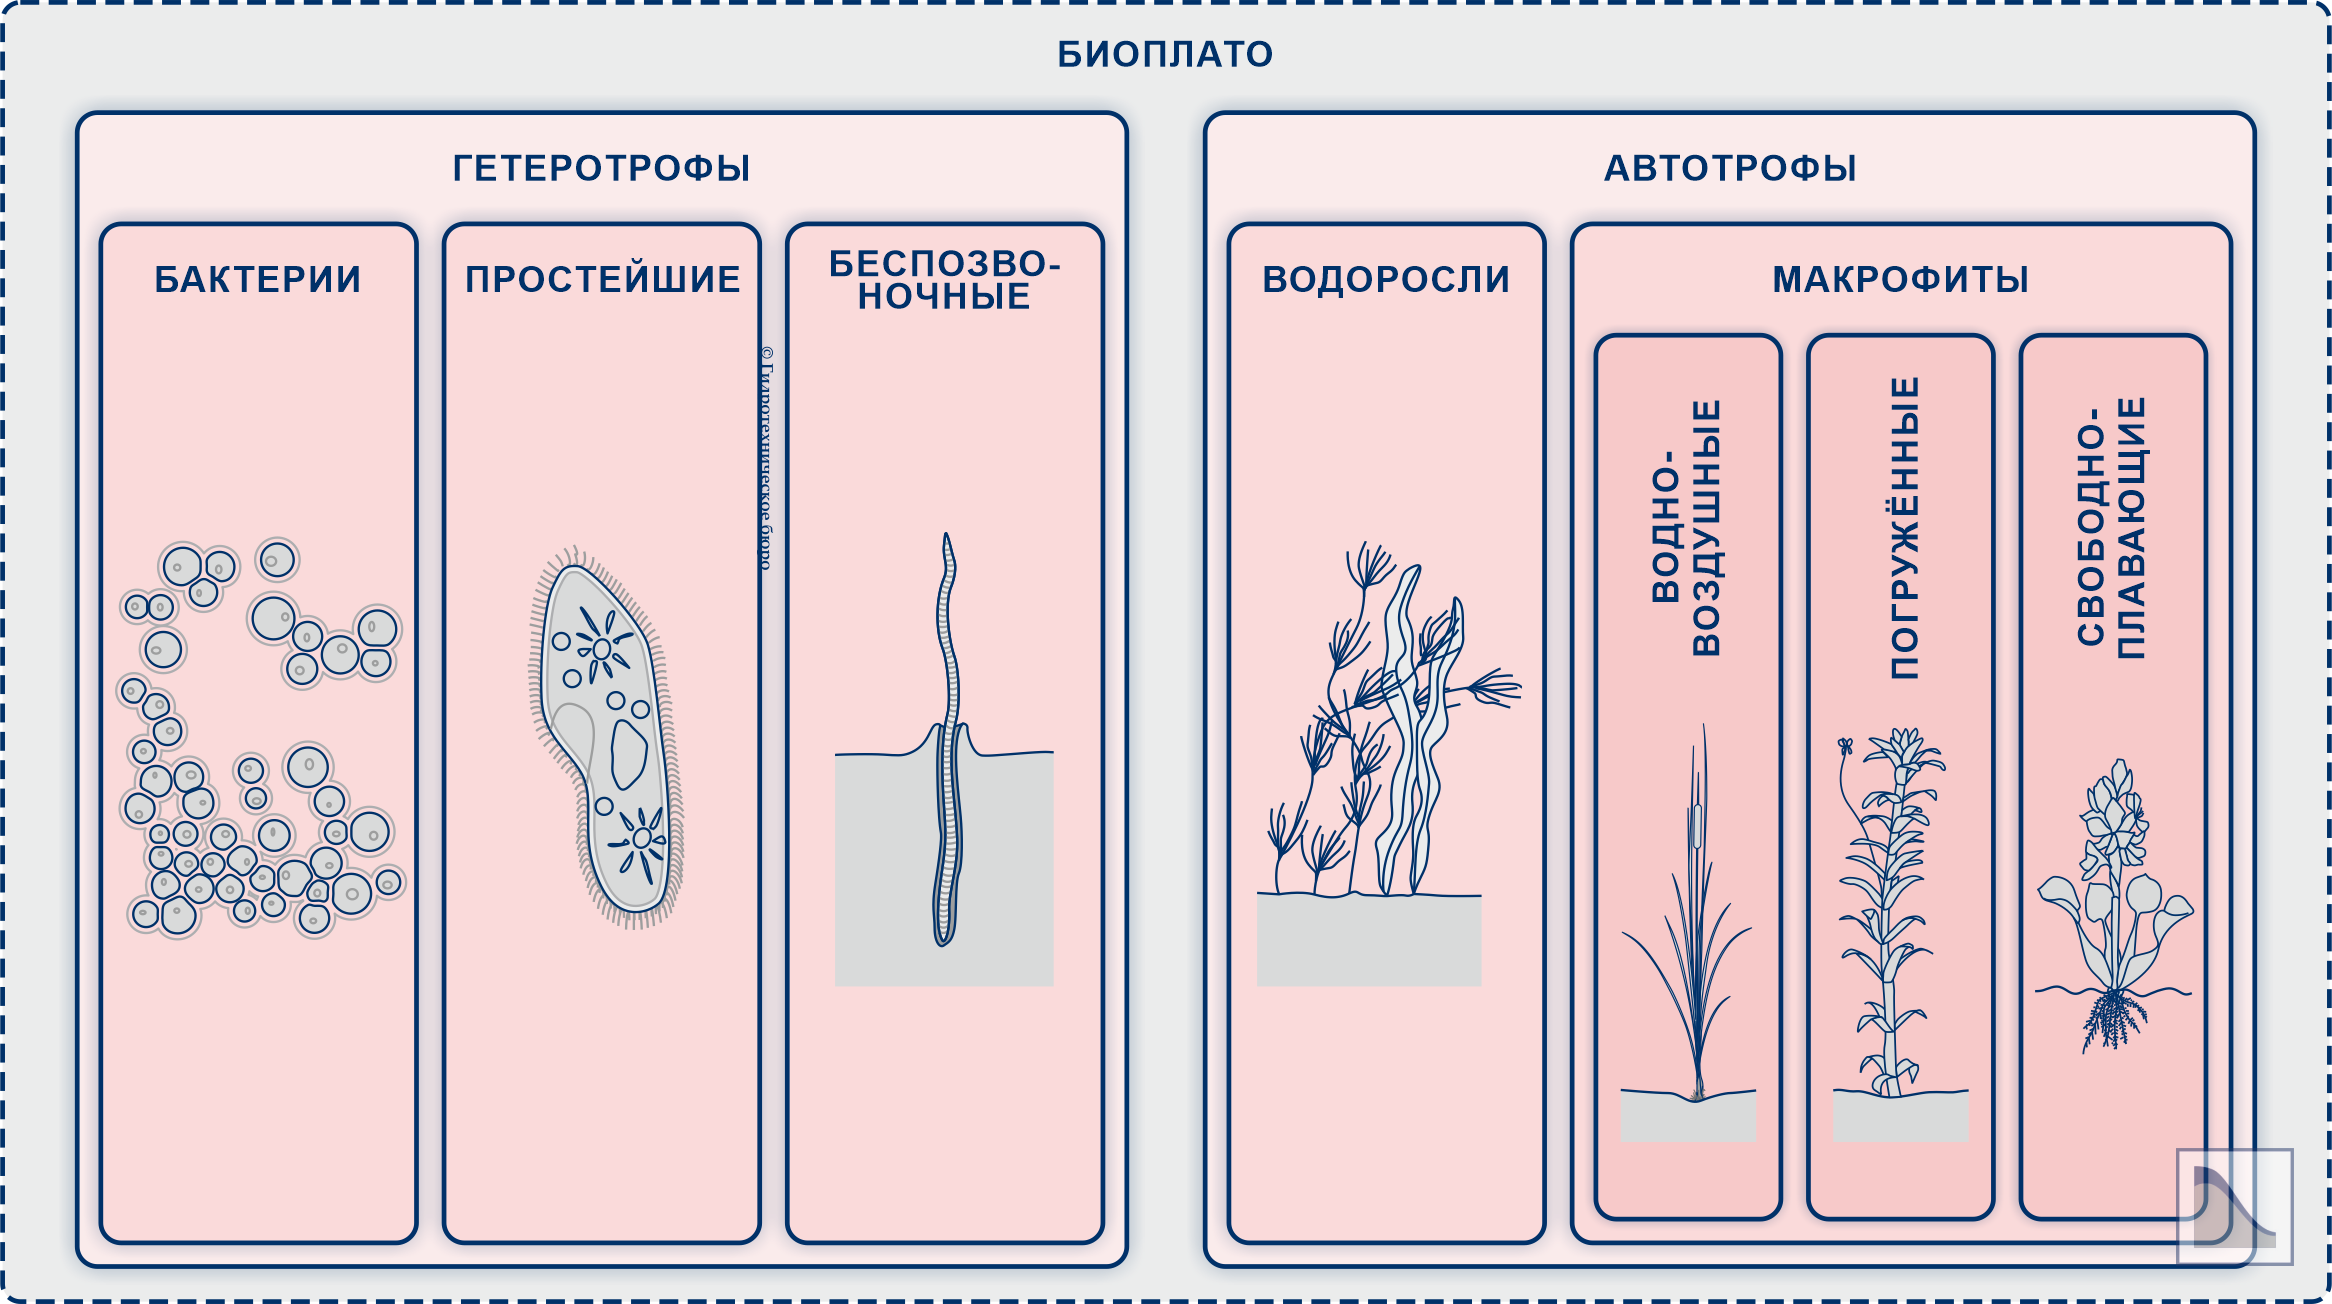 Биологическая схема биоплато